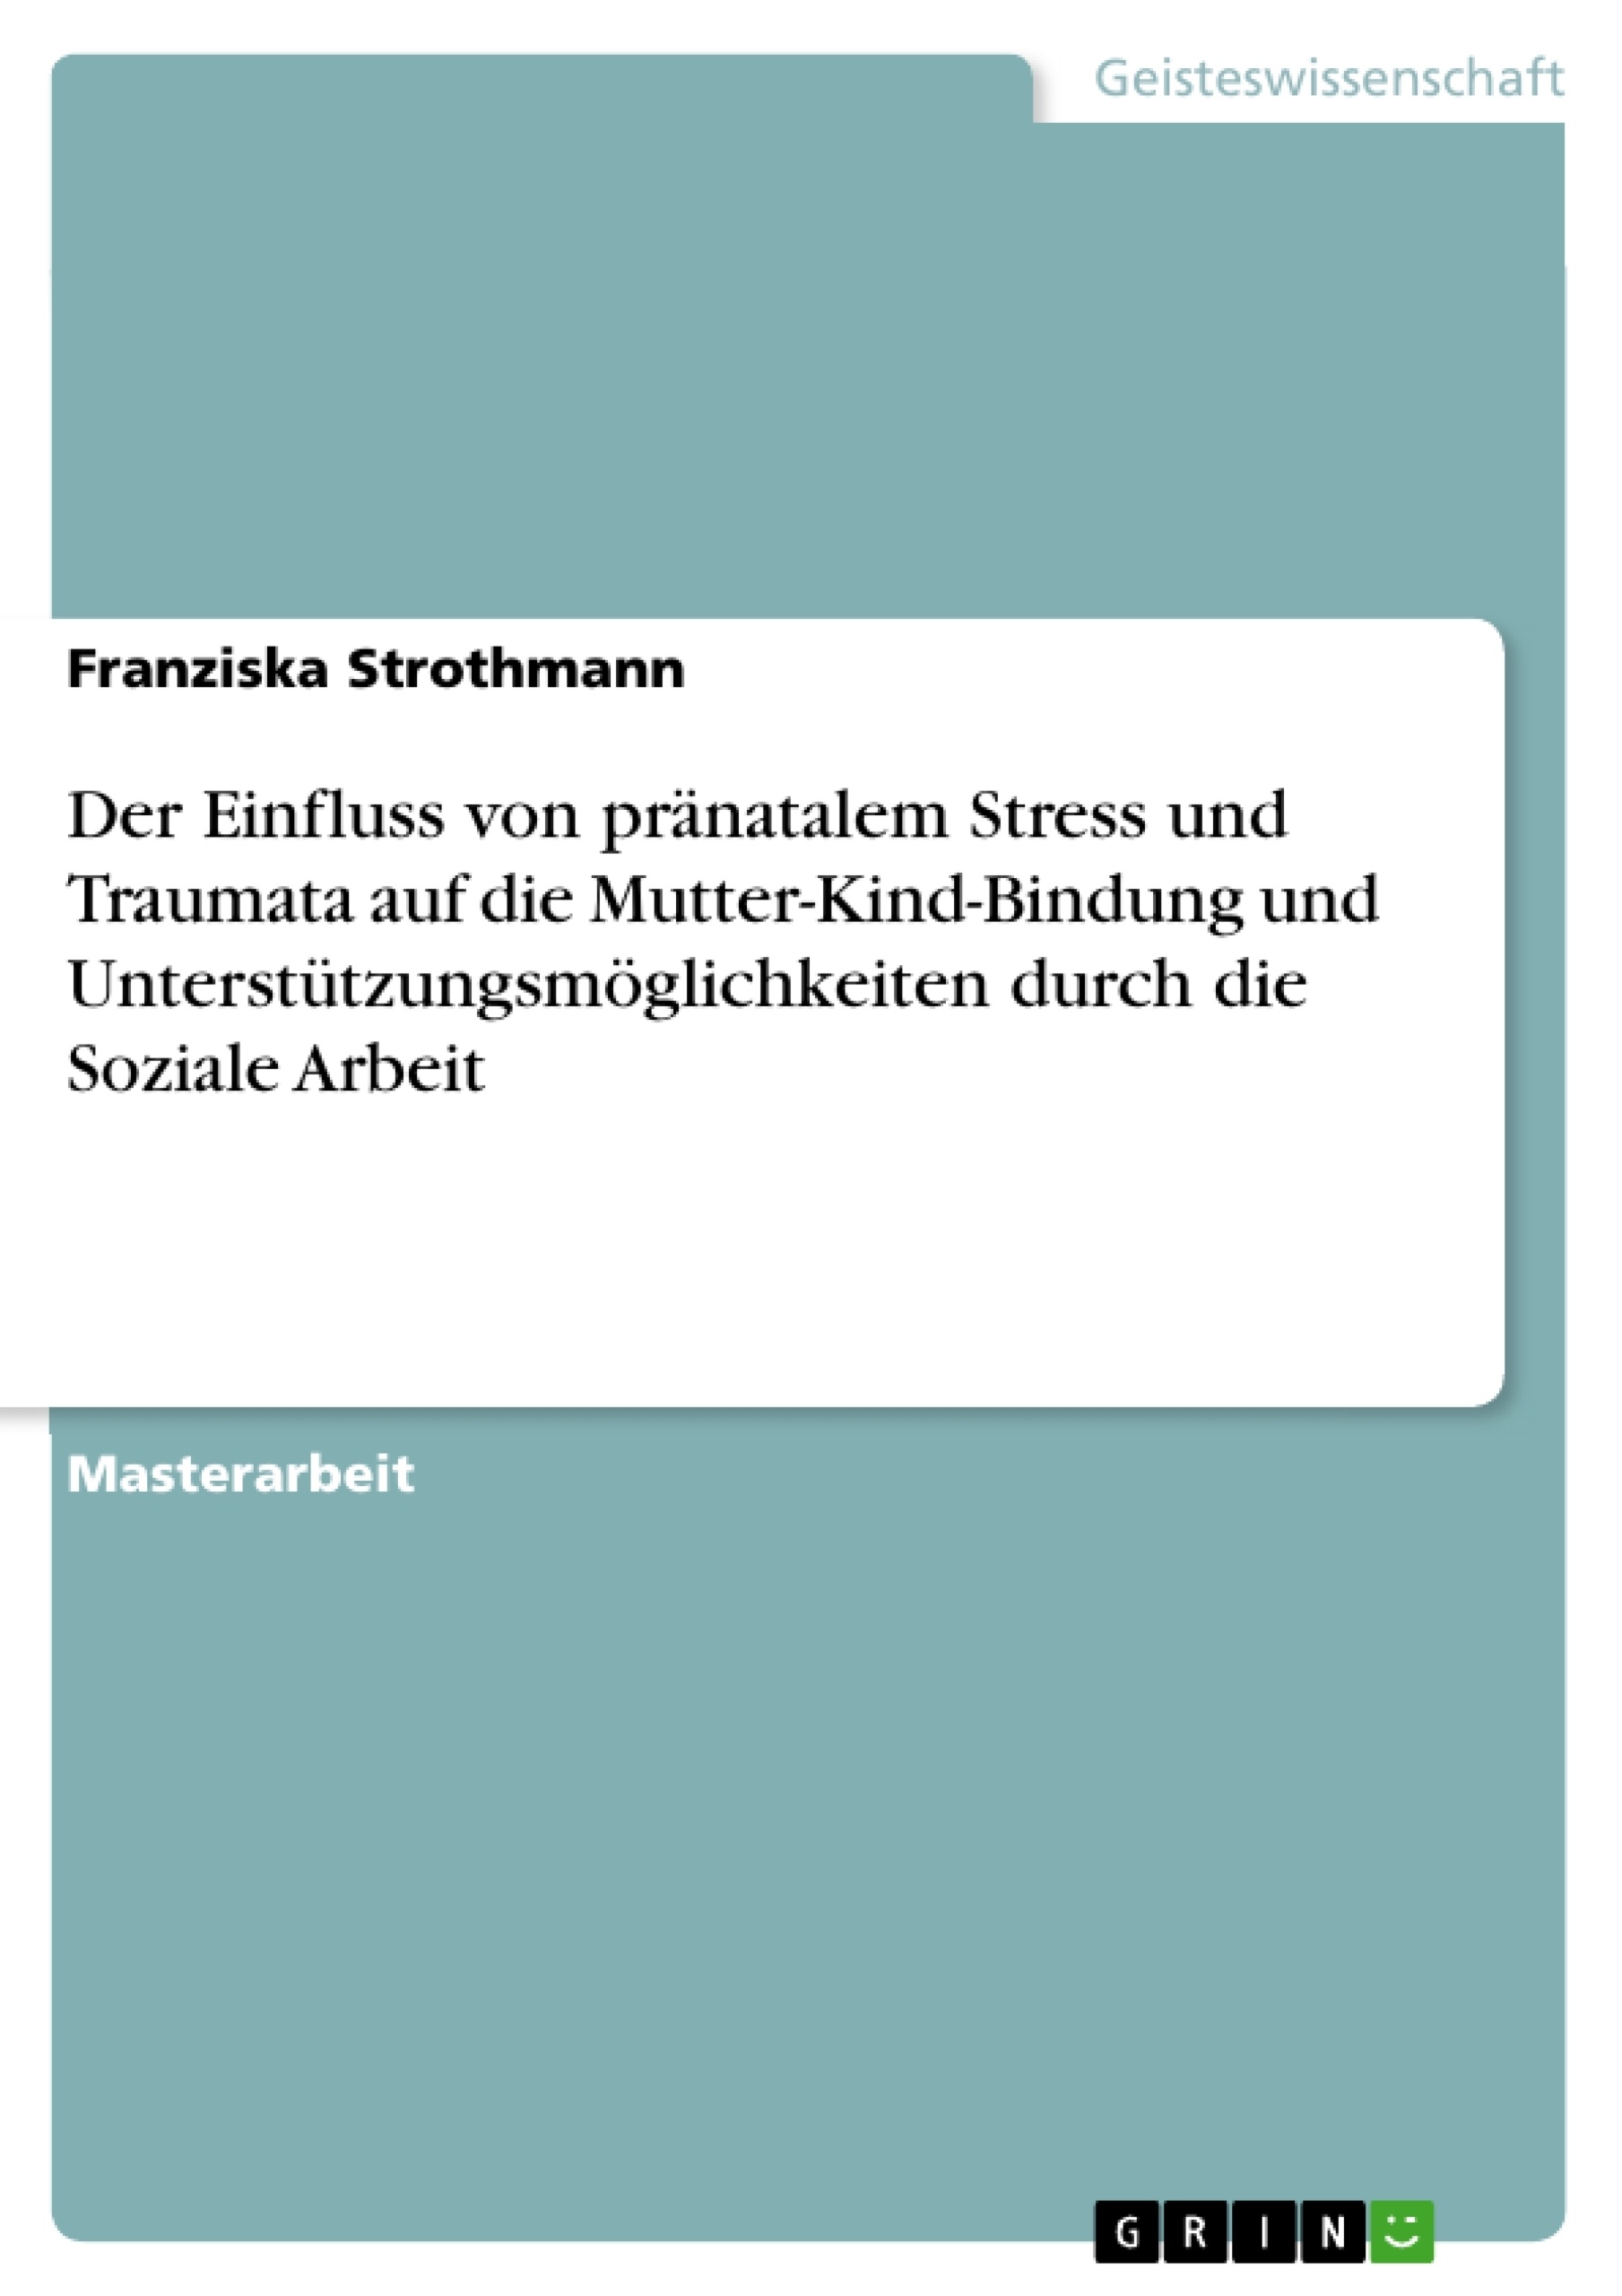 Titel: Der Einfluss von pränatalem Stress und Traumata auf die Mutter-Kind-Bindung und Unterstützungsmöglichkeiten durch die Soziale Arbeit